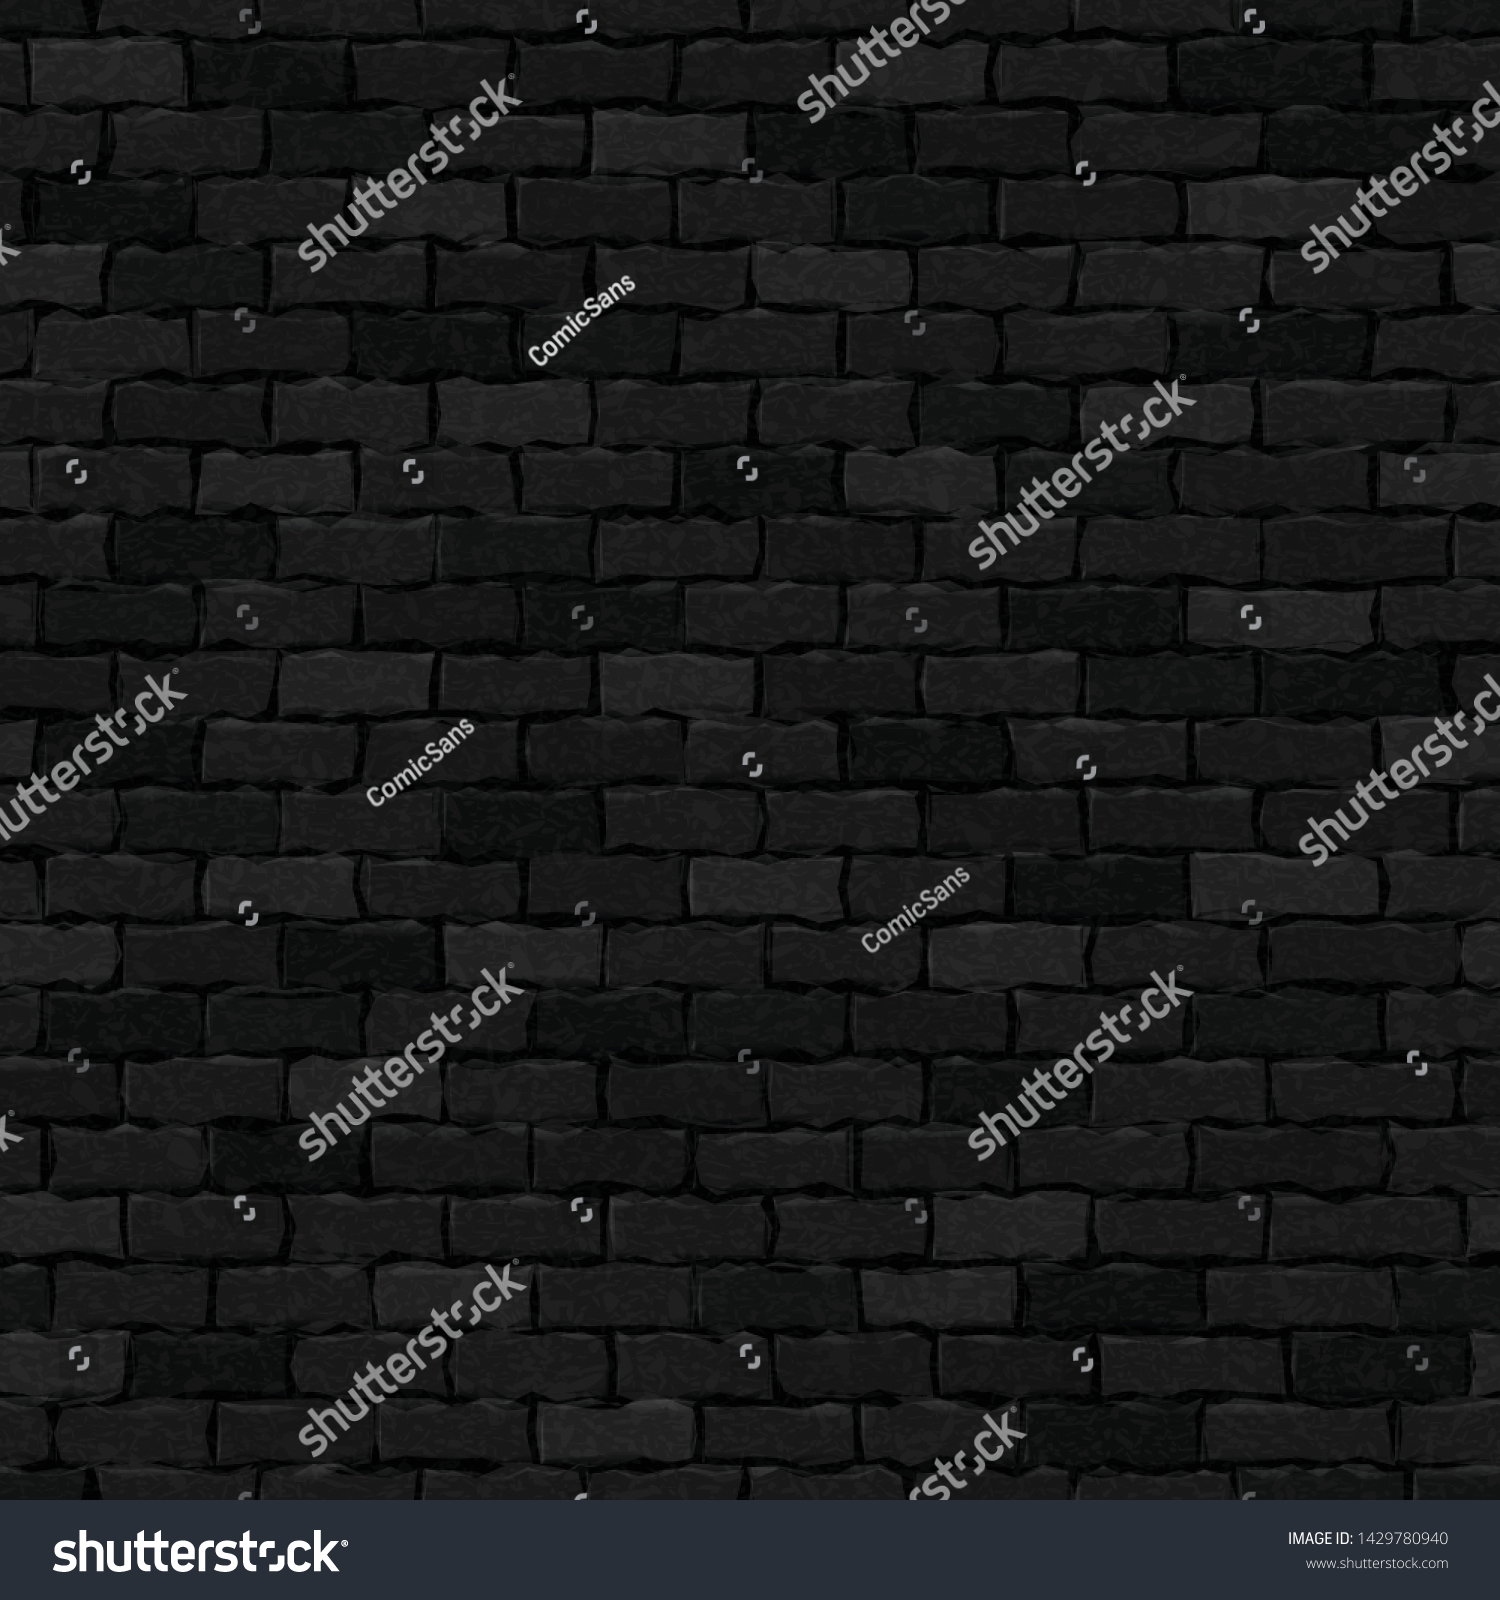 テンプレートと壁紙の装飾用の 黒いレンガ壁のシームレスなパターン背景にベクター画像のリアルな画像 のベクター画像素材 ロイヤリティフリー